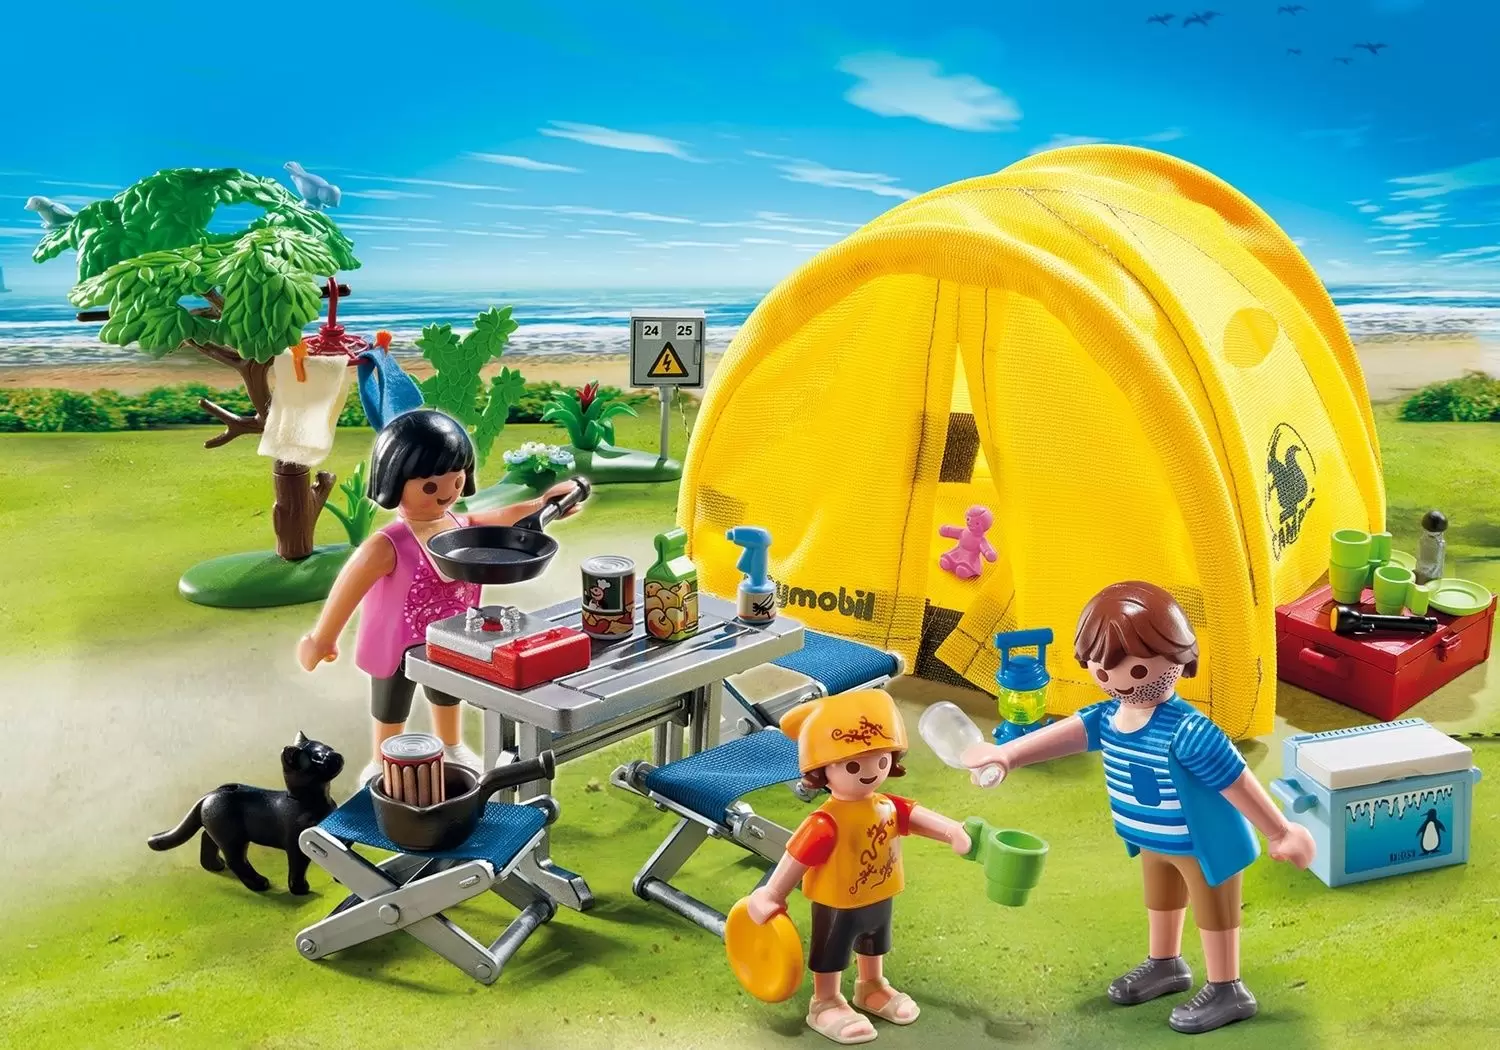 Playmobil en vacances - Famille et tente de camping